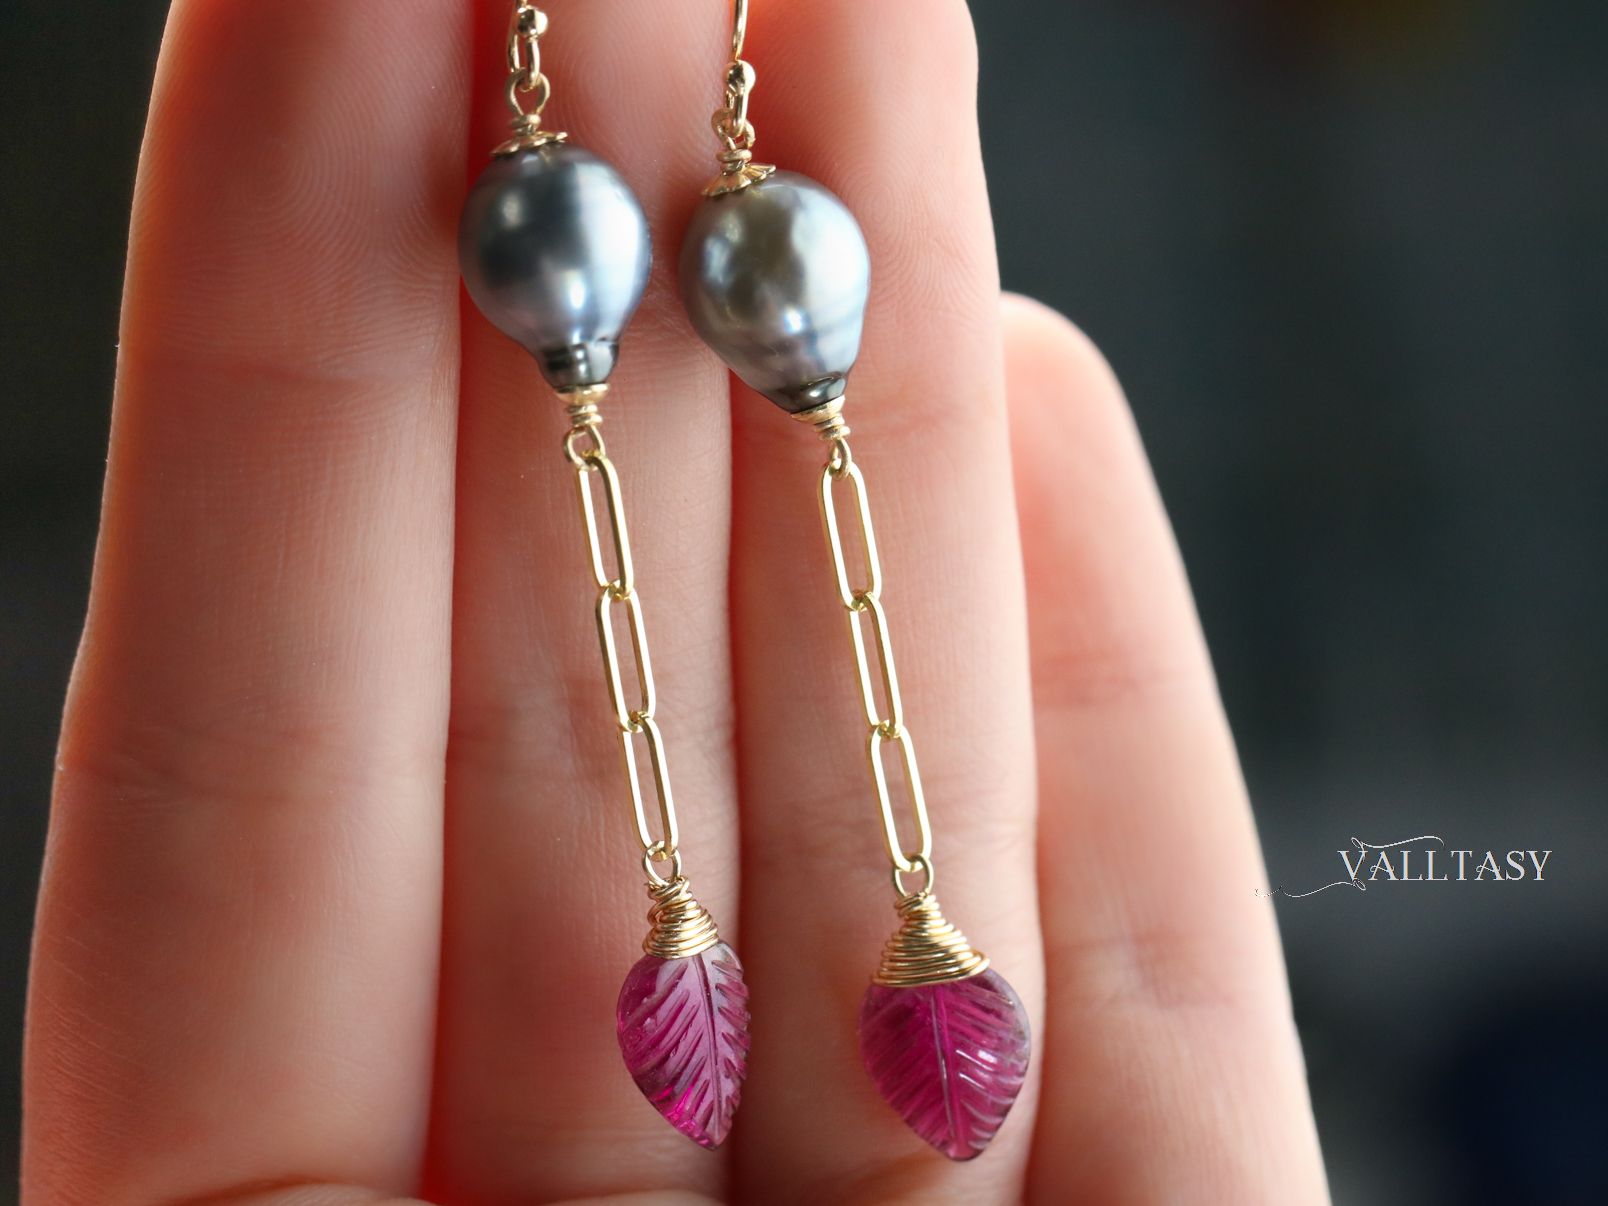 Pink tourmaline earrings.